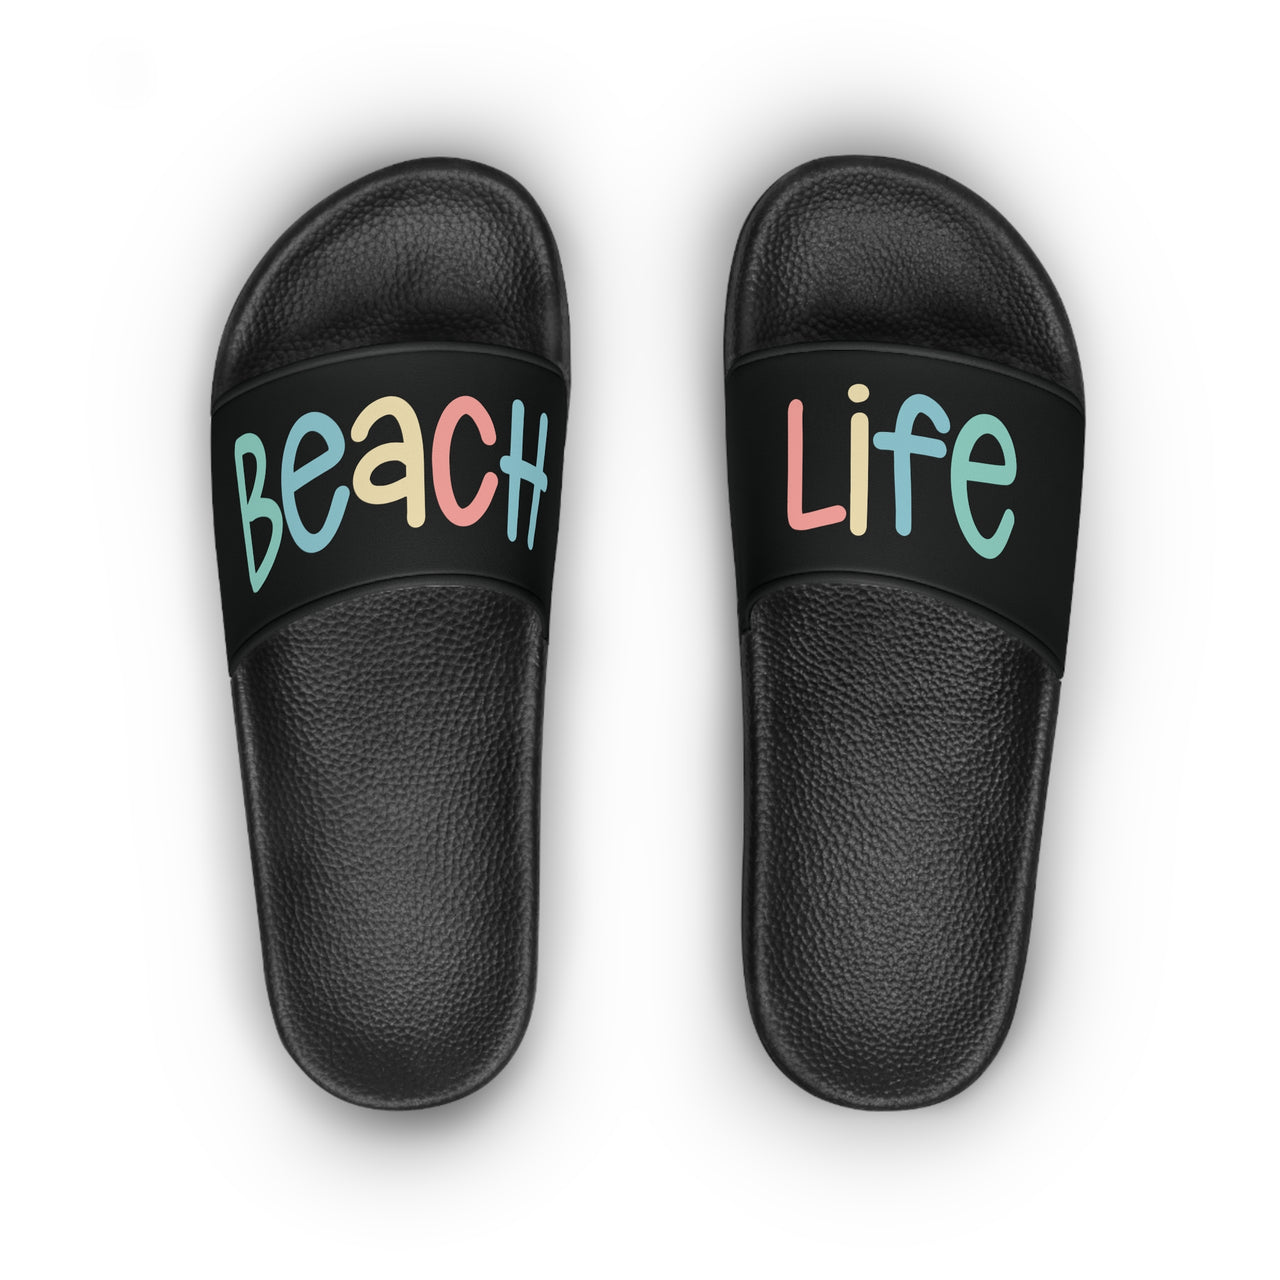 Beach Life Slide Sandals, Women's